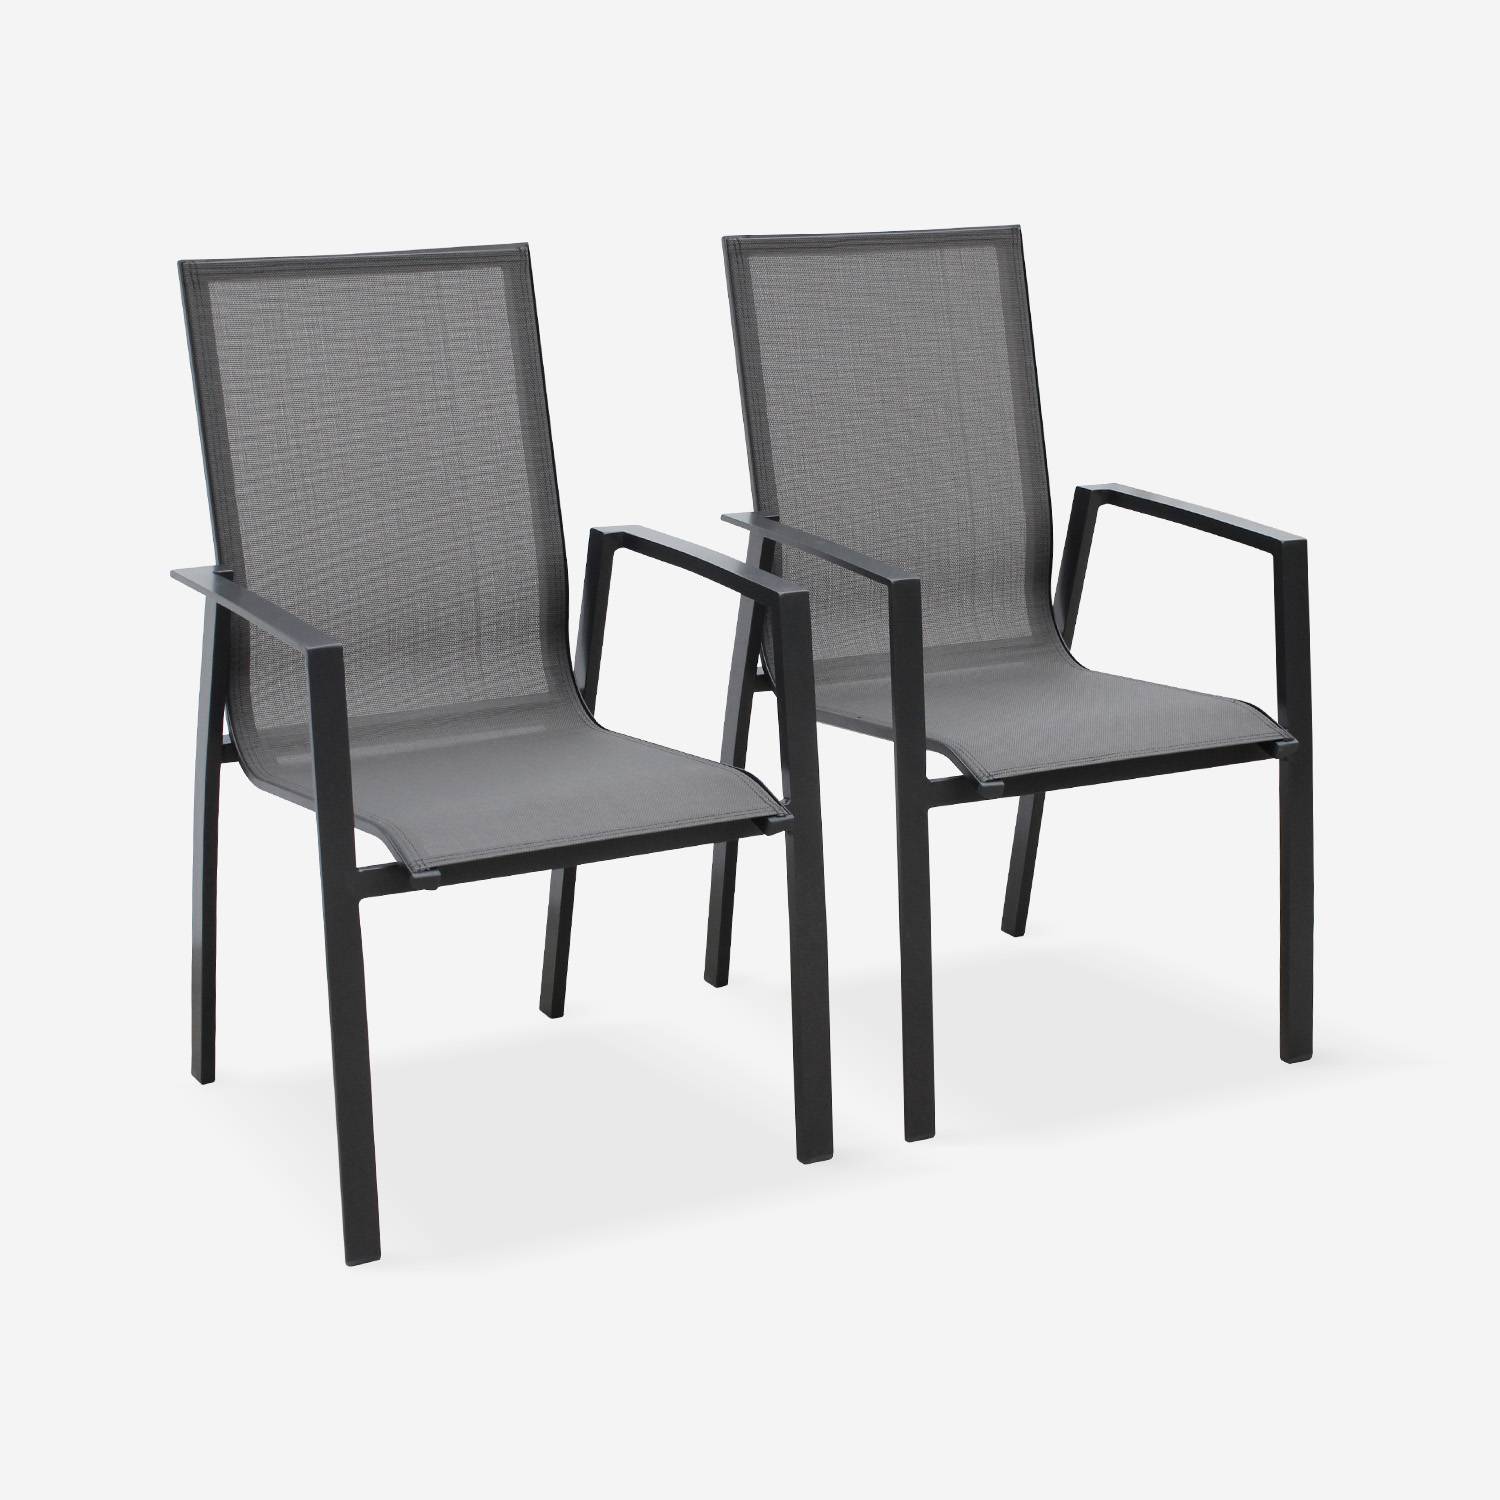 Coppia di sedie Washington Antracite/ Grigio scuro in alluminio antracite e textilene colore grigio scuro, impilabili Photo1